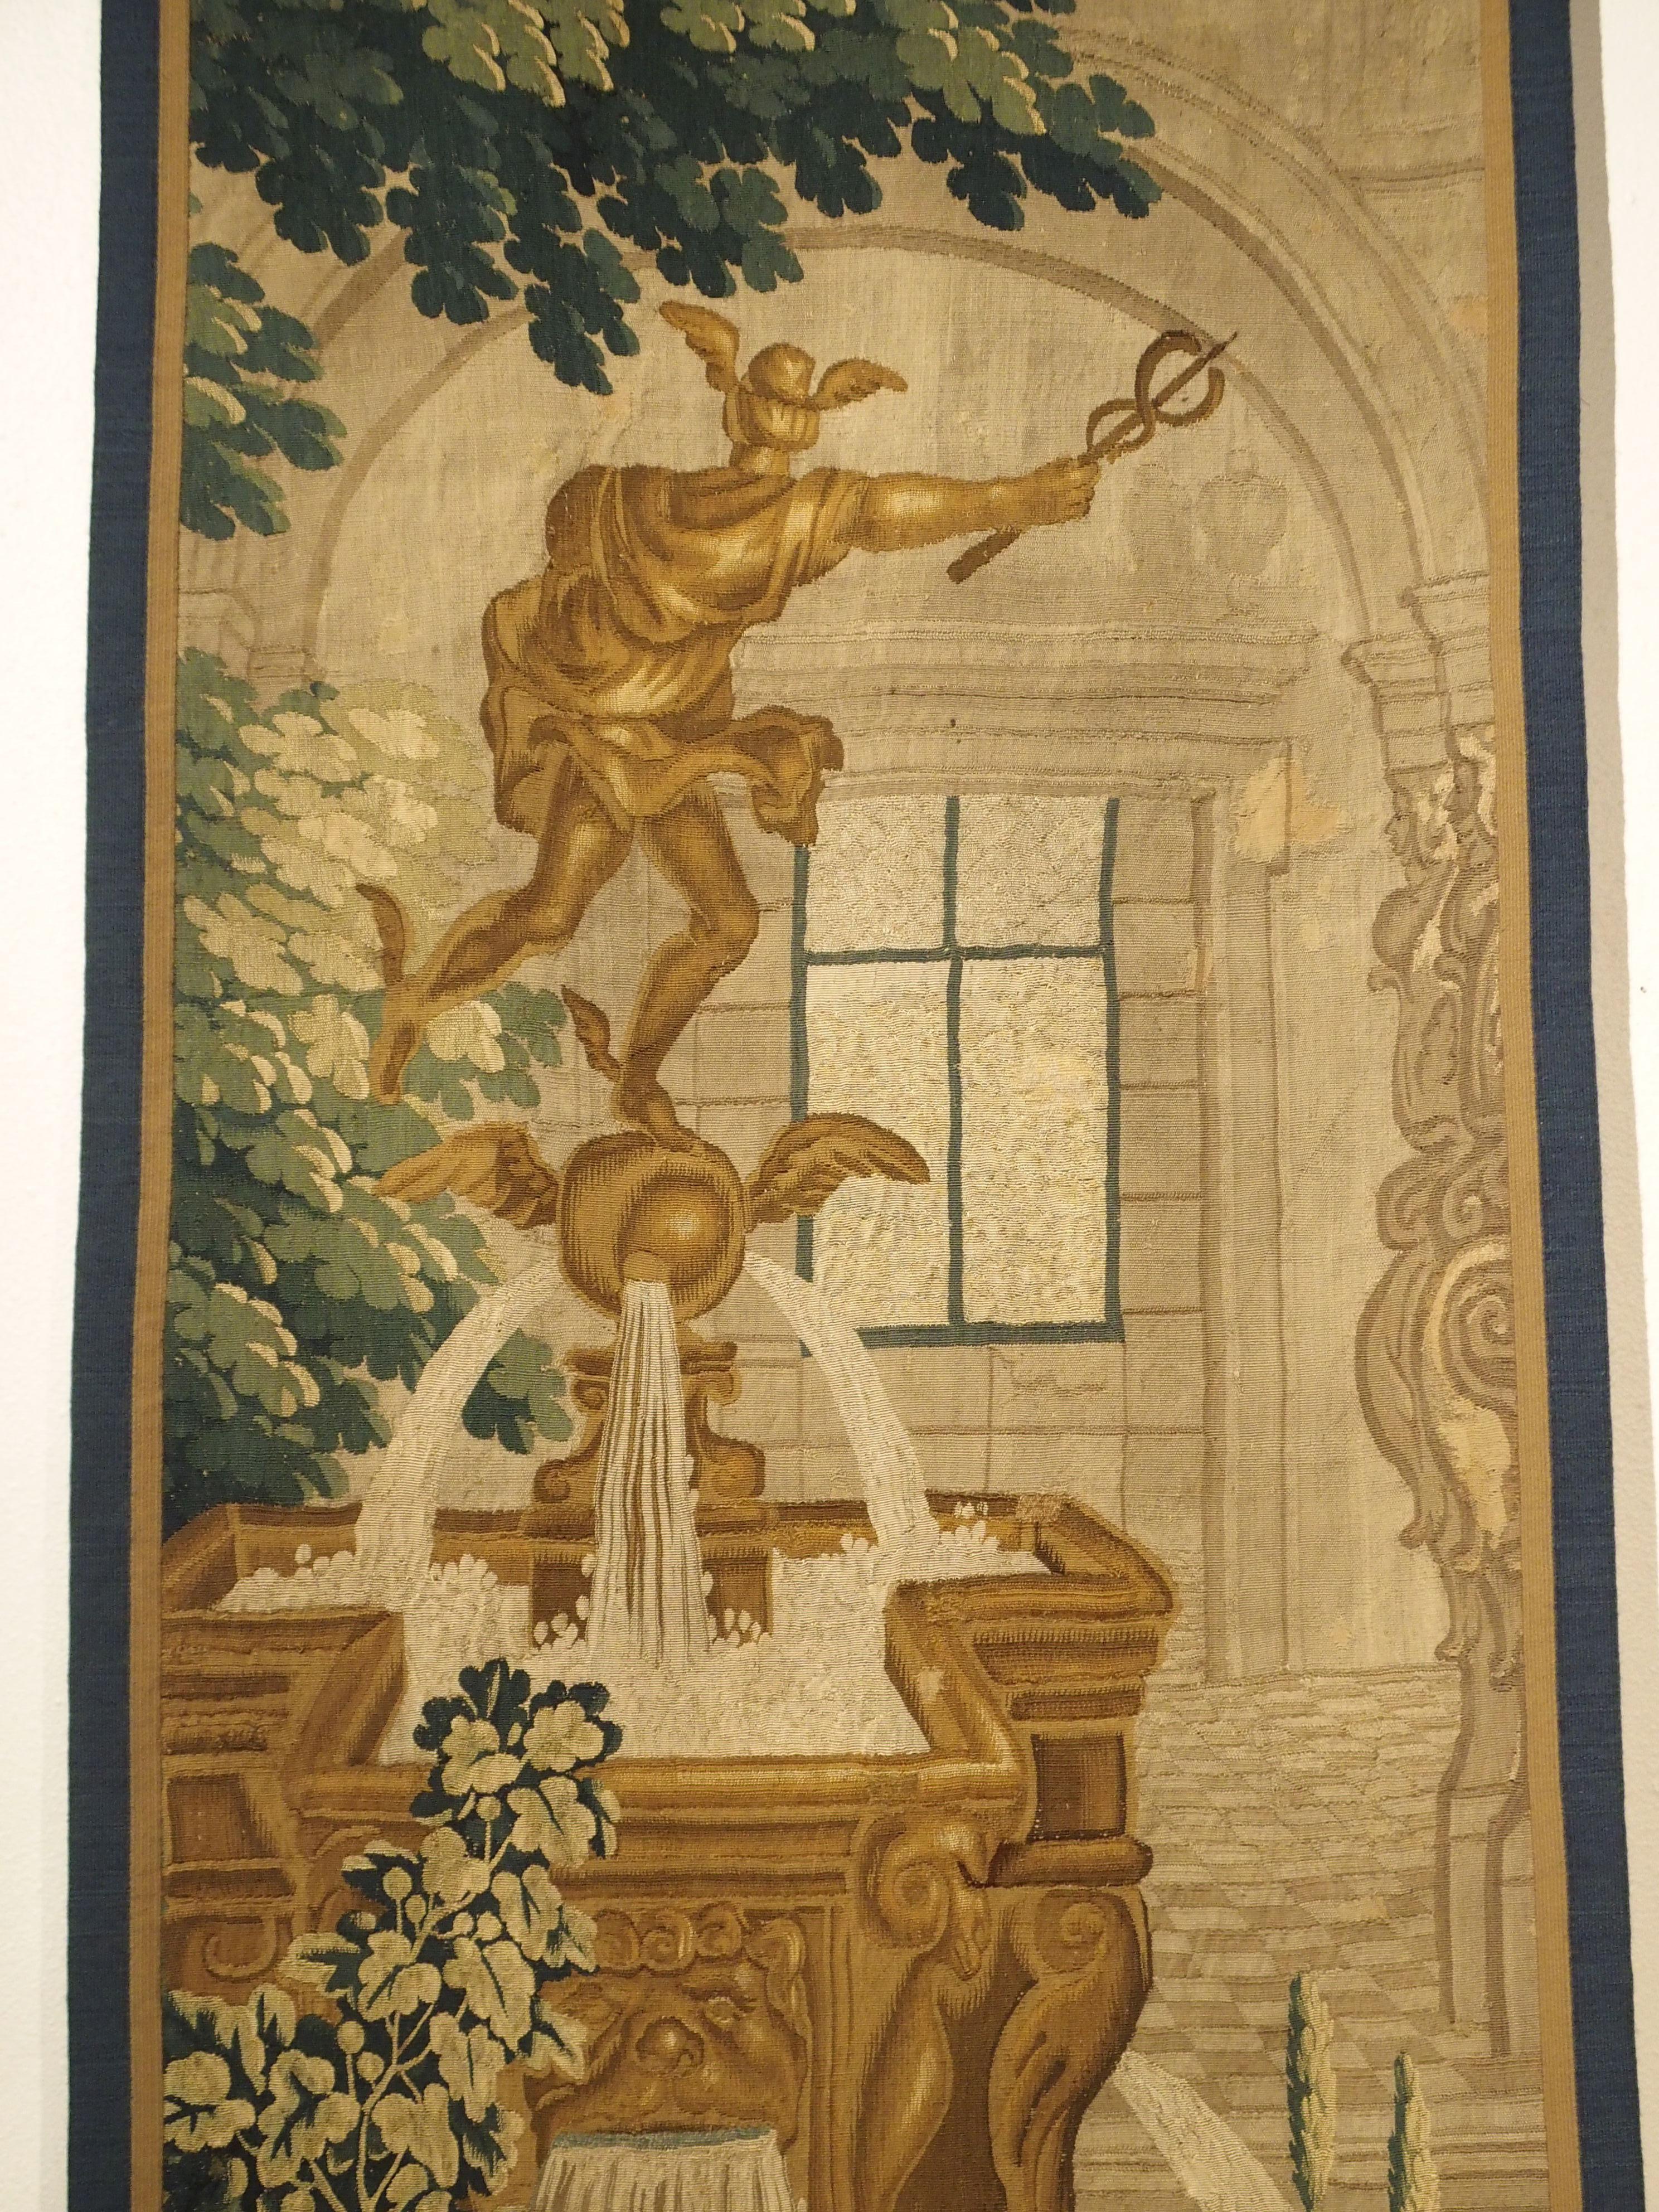 Fontaine et architecture

Cet étroit fragment de tapisserie en soie et en laine date des années 1600 et provient de Bruxelles. Elle représente une statue du dieu grec Hermès (Mercure pour les Romains), qui était le messager des dieux. Il est